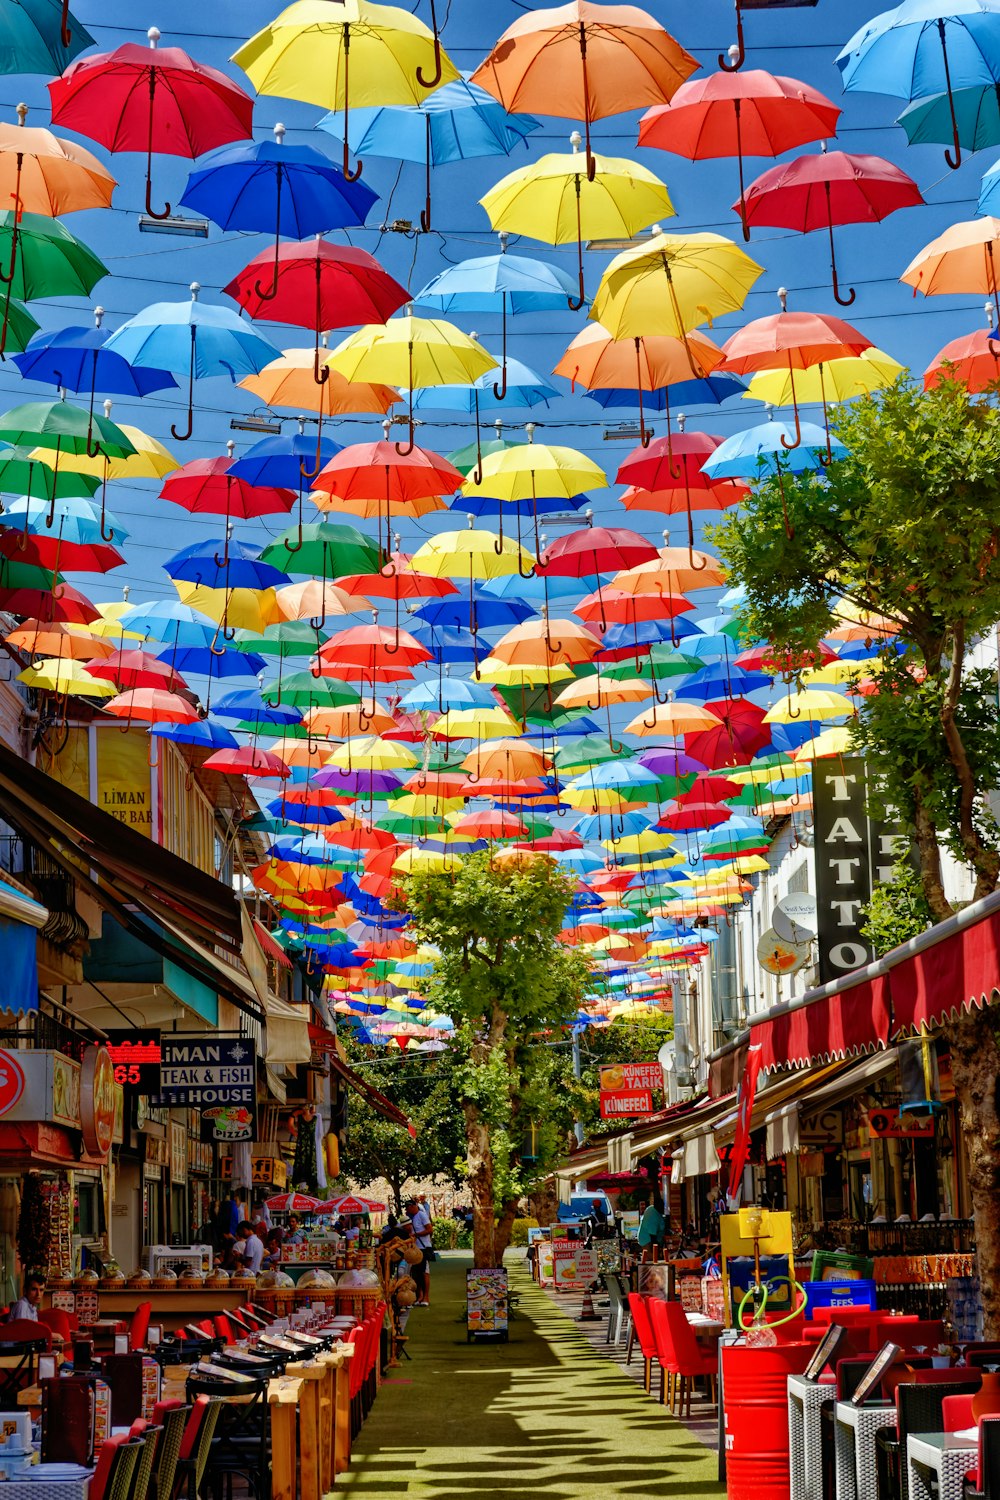 Foto zum Thema Verschiedene Regenschirme auf der Straße tagsüber –  Kostenloses Bild zu Tuzcular auf Unsplash